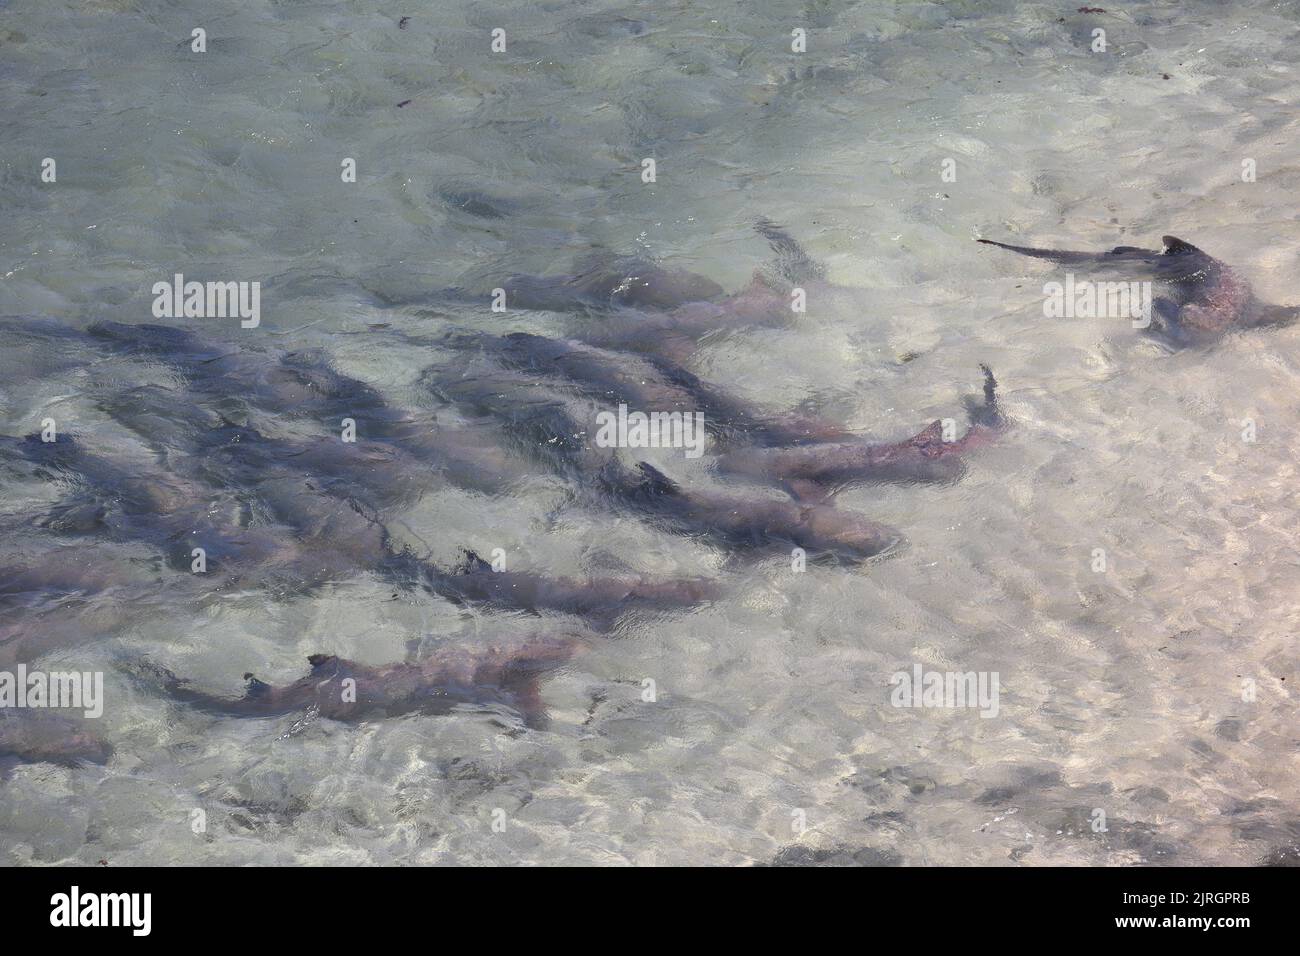 Tubarao Limao ou le requin Lemon se sont rassemblés à la surface de l'île Fernando de Noronha, au Brésil. Negapron brevirostris Banque D'Images